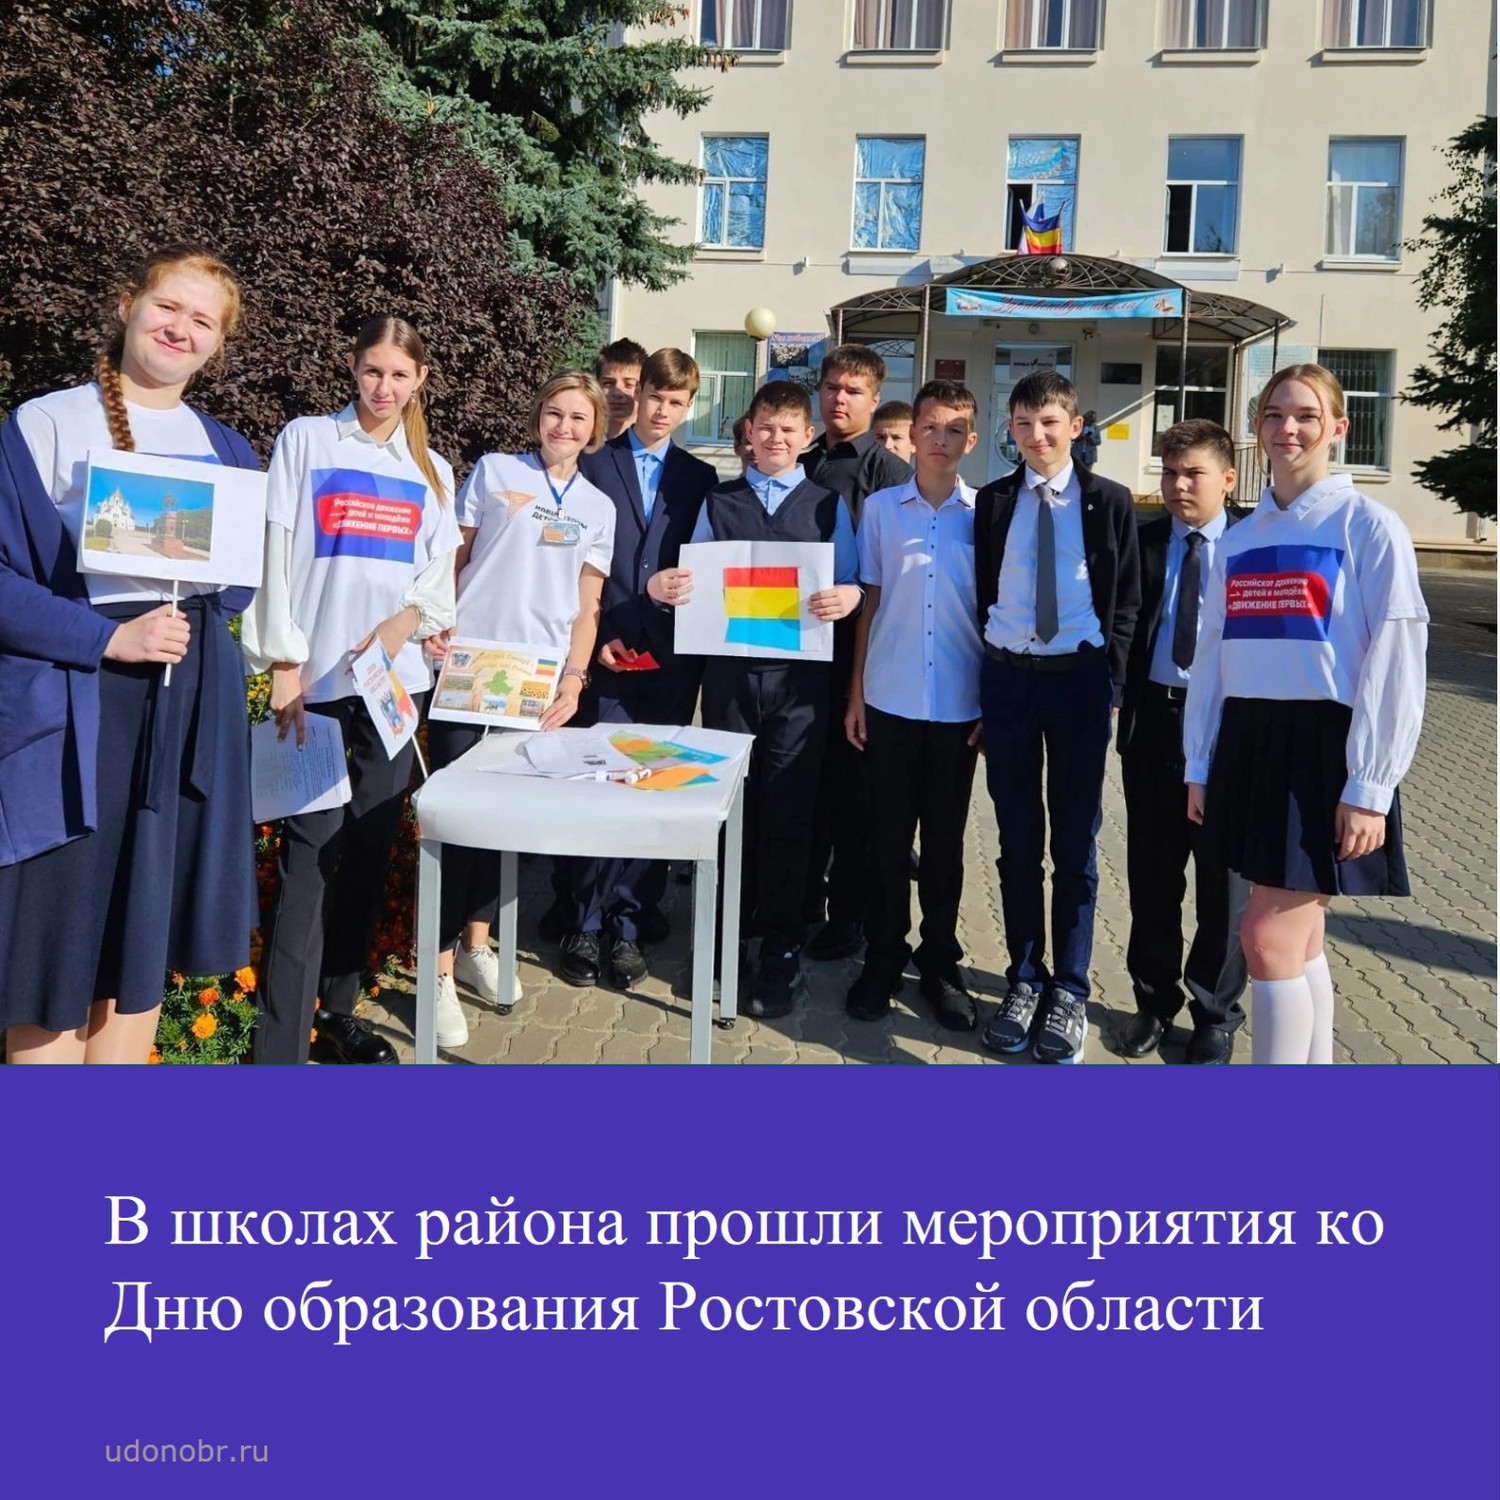 В школах района прошли мероприятия ко Дню образования Ростовской области